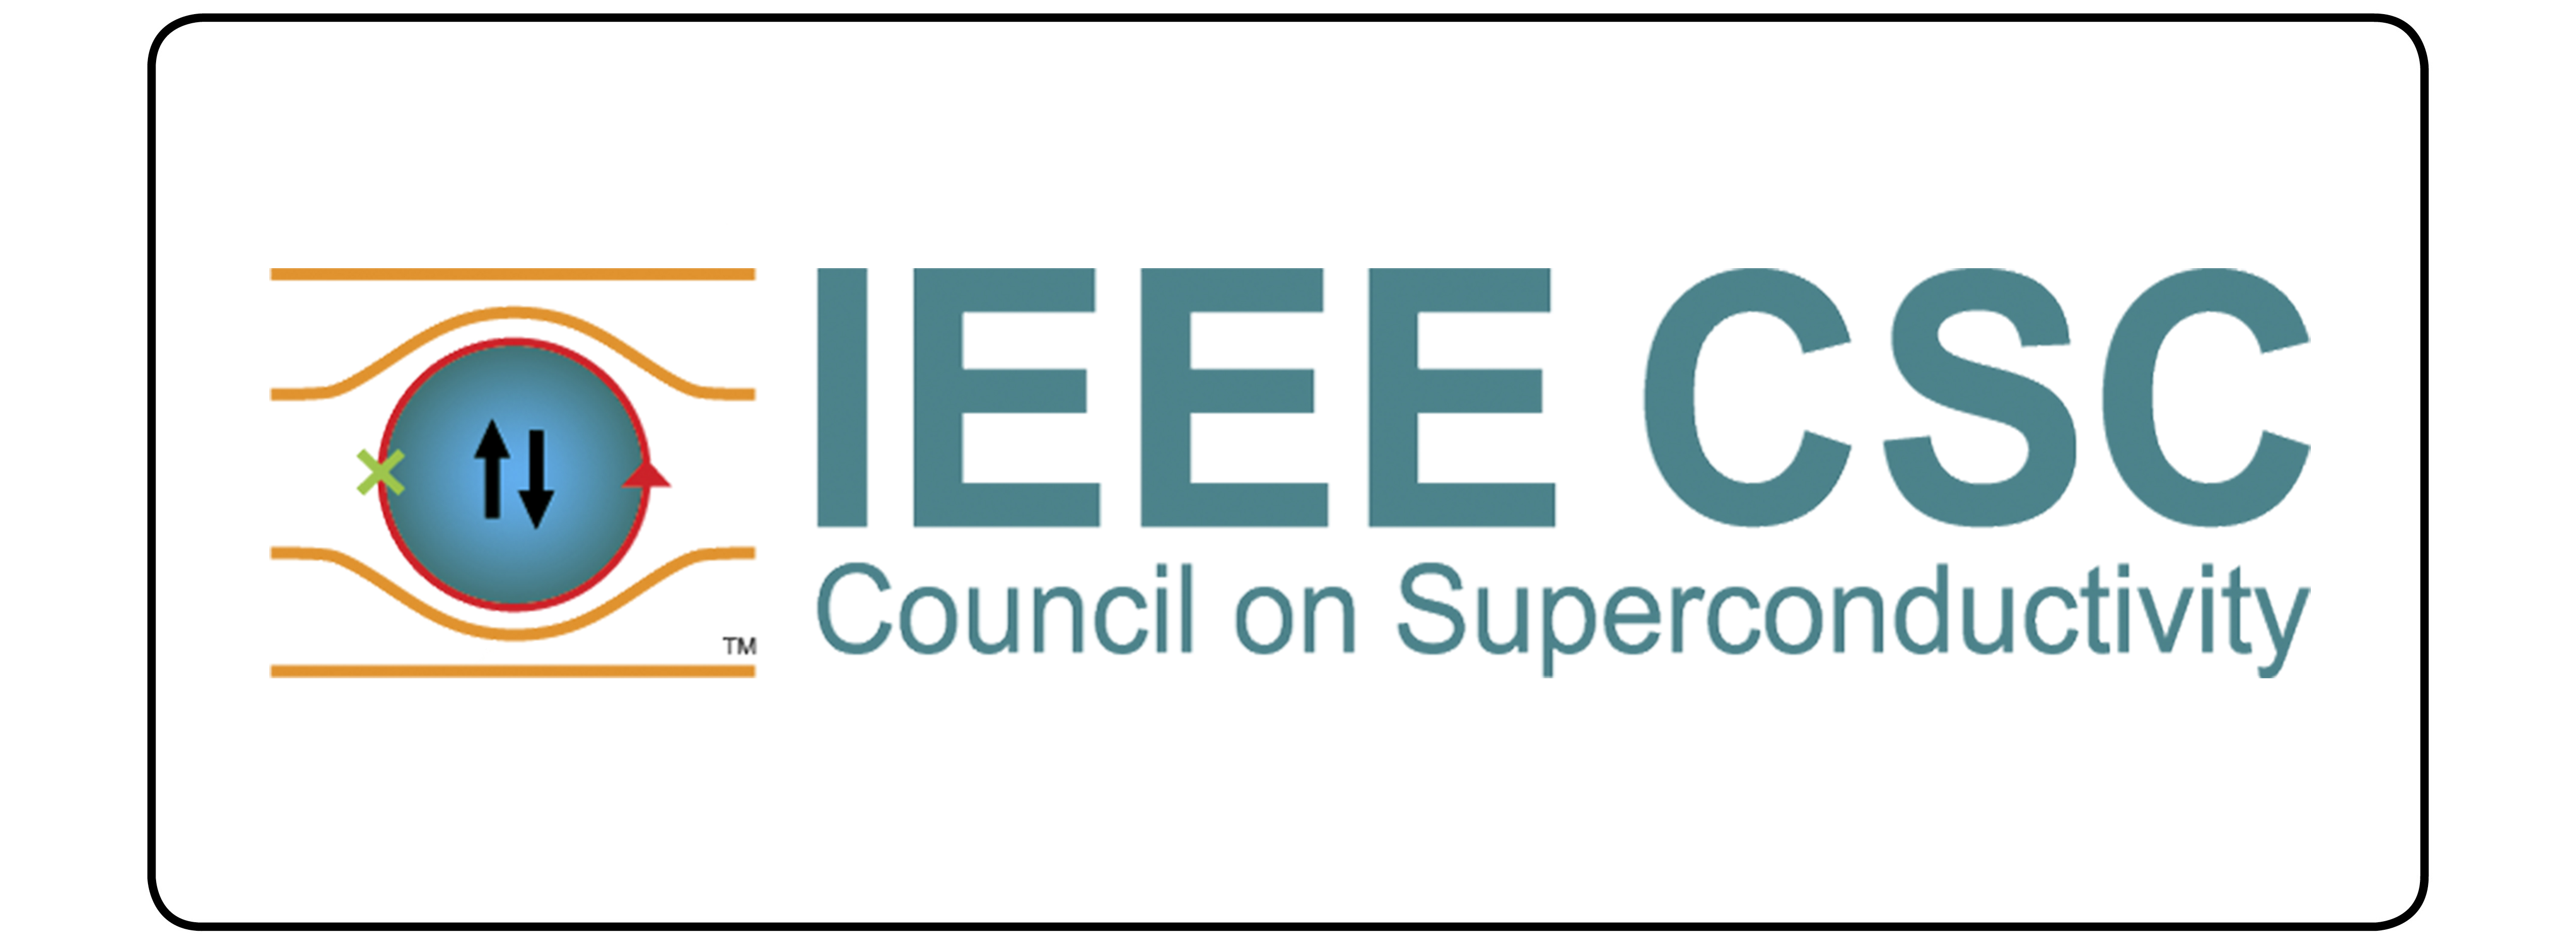 IEEE CSC logo